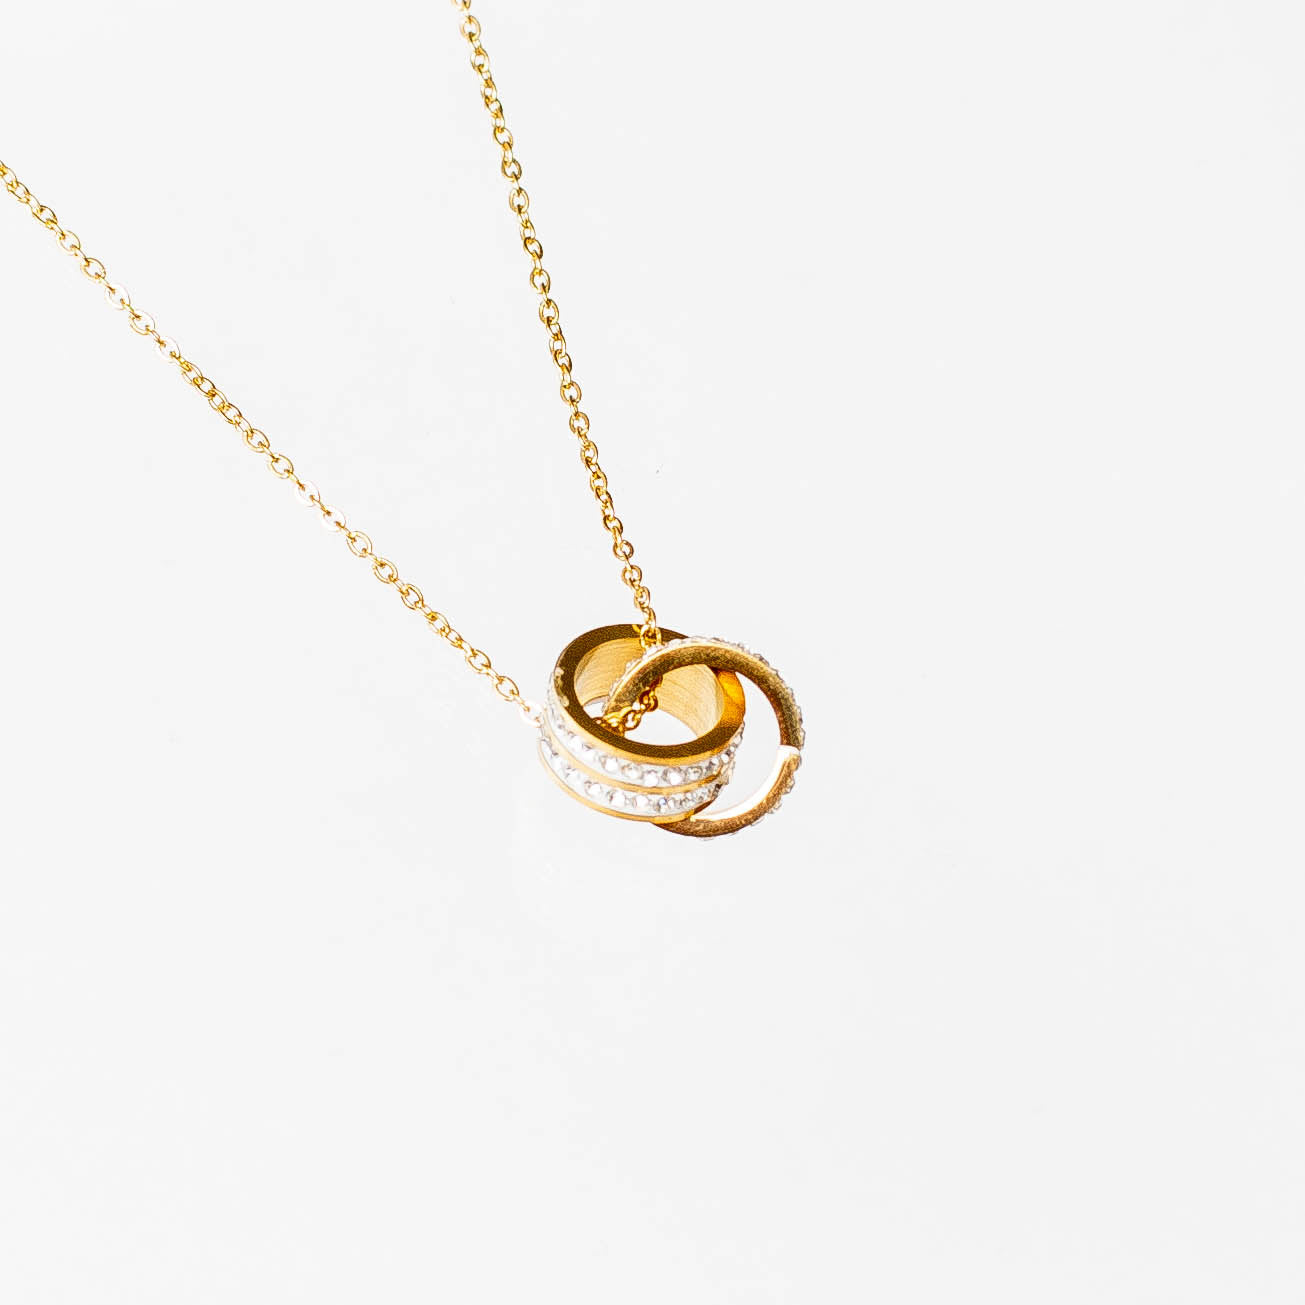 Collar doble anillo con zirconias  gold